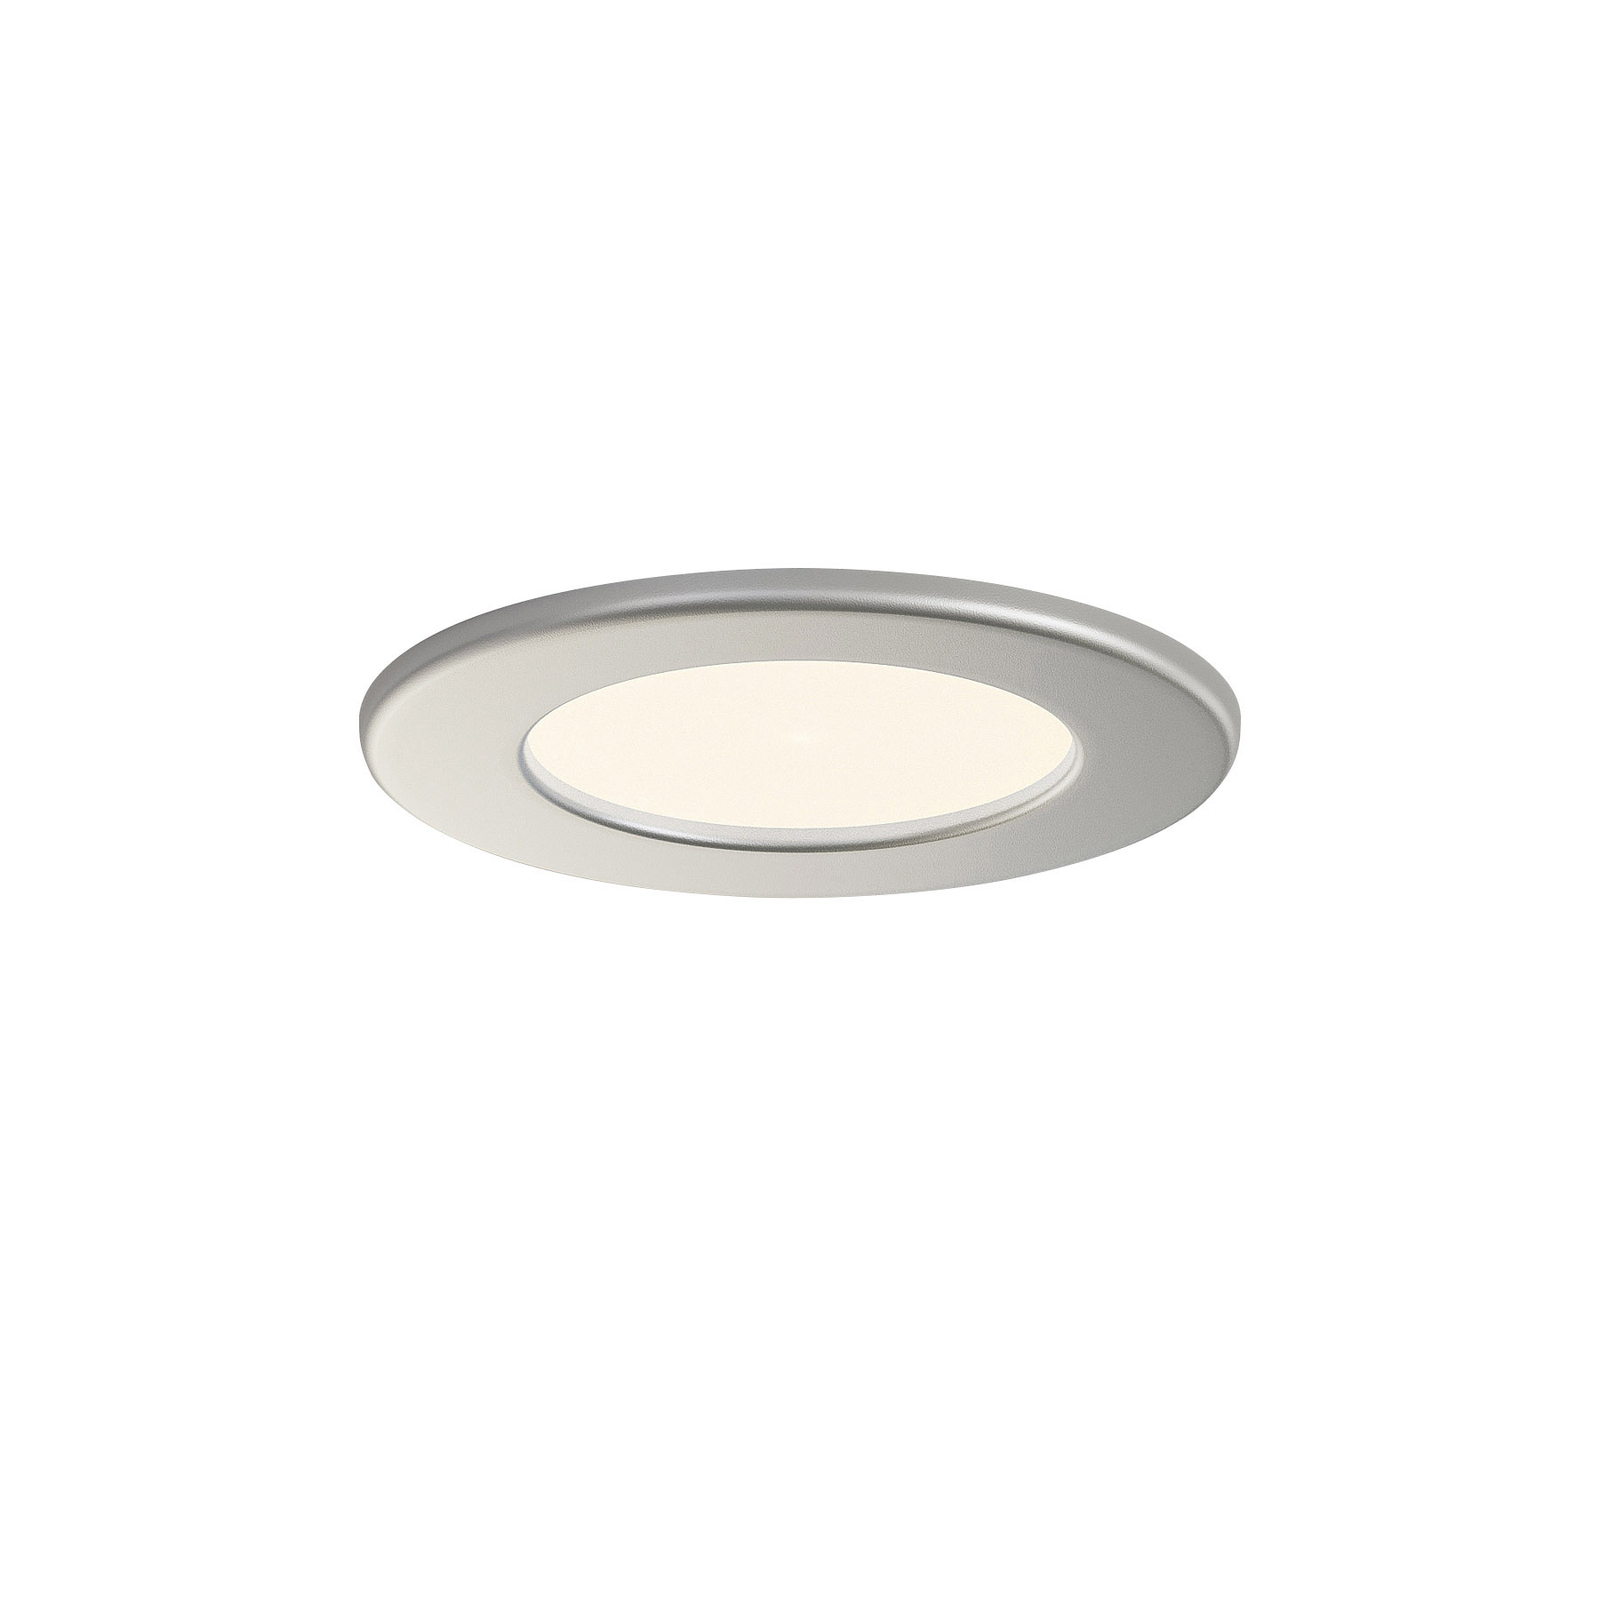 Prios Cadance LED ugradbena svjetiljka, srebrna, 11,5 cm, set od 3 komada,